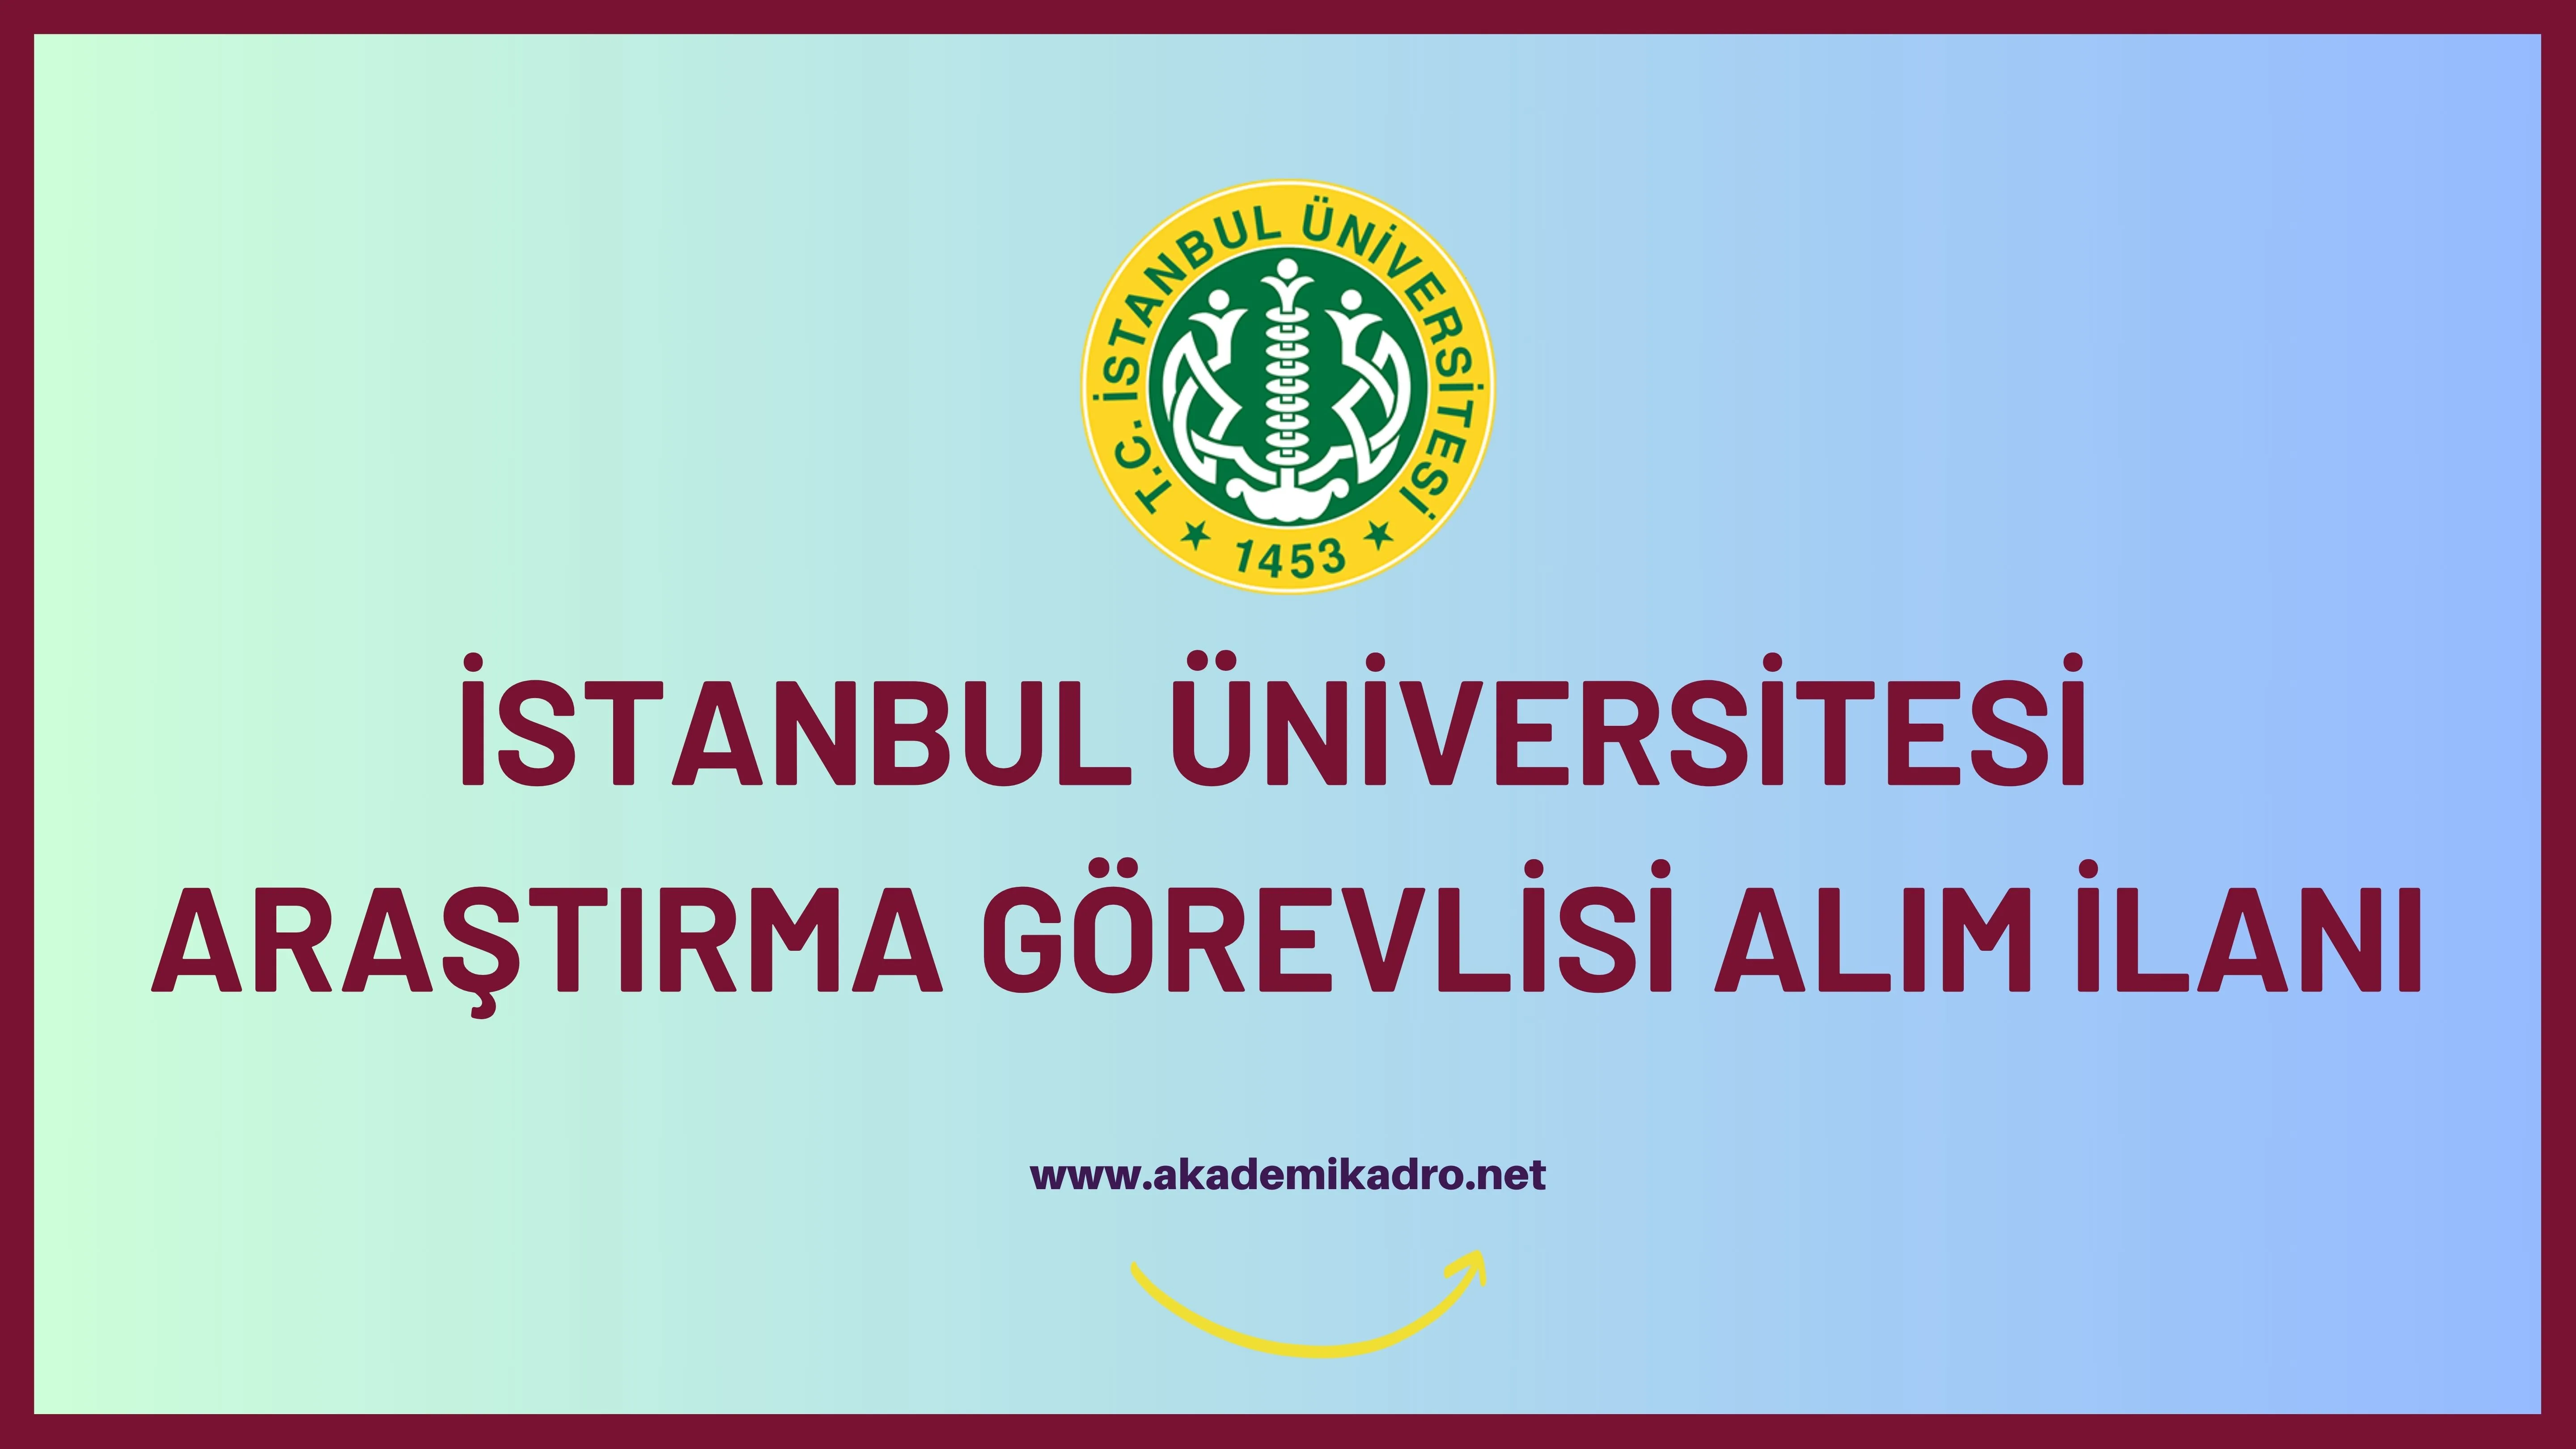 İstanbul Üniversitesi 33 Araştırma görevlisi alacaktır. Son başvuru tarihi 14 Aralık 2023